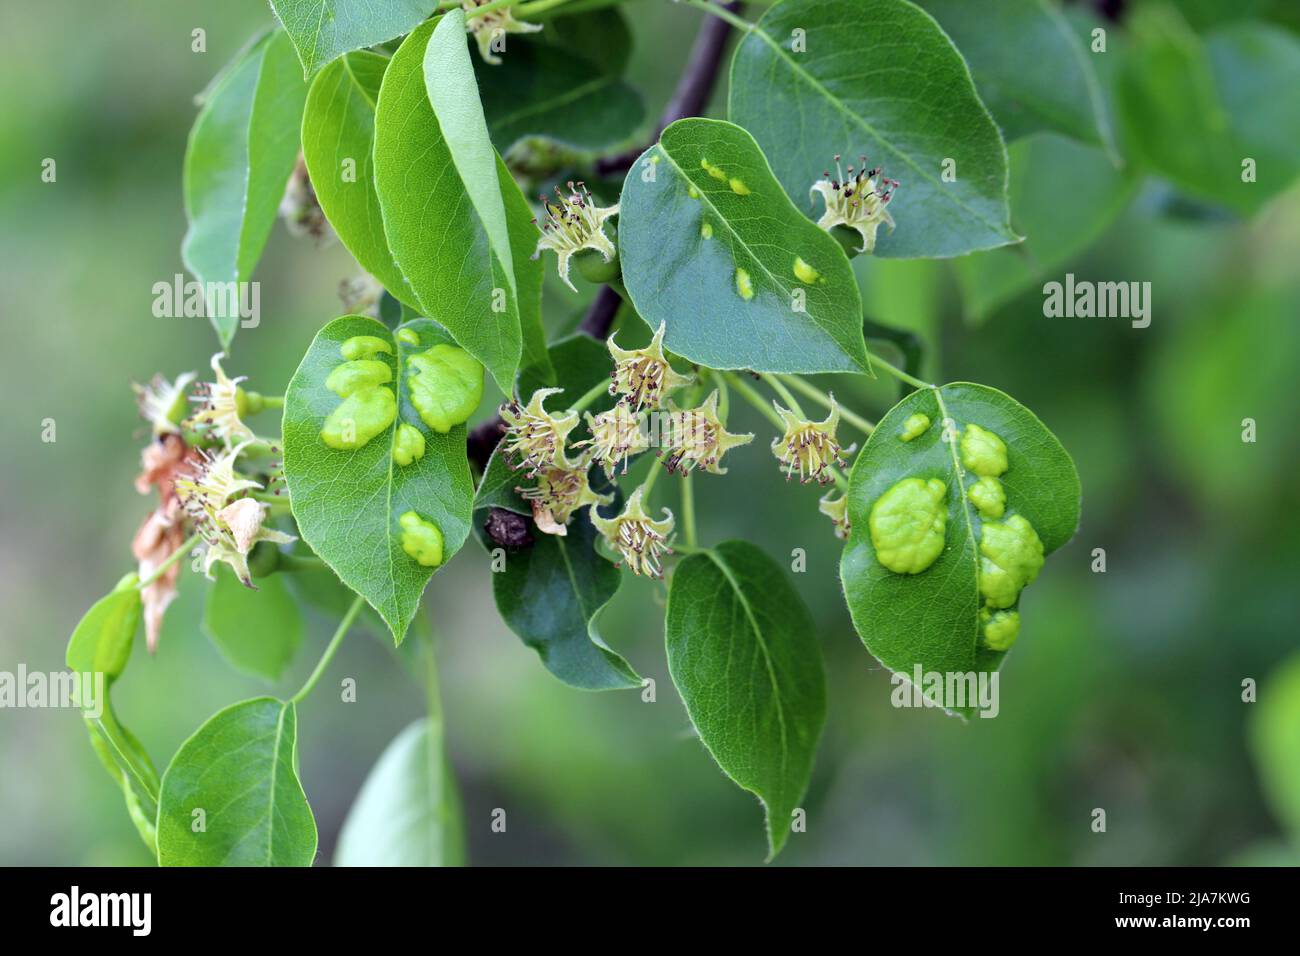 Symptome von Krankheiten oder Schädlingsinfektionen auf Birnenblättern in einem Obstgarten. Stockfoto